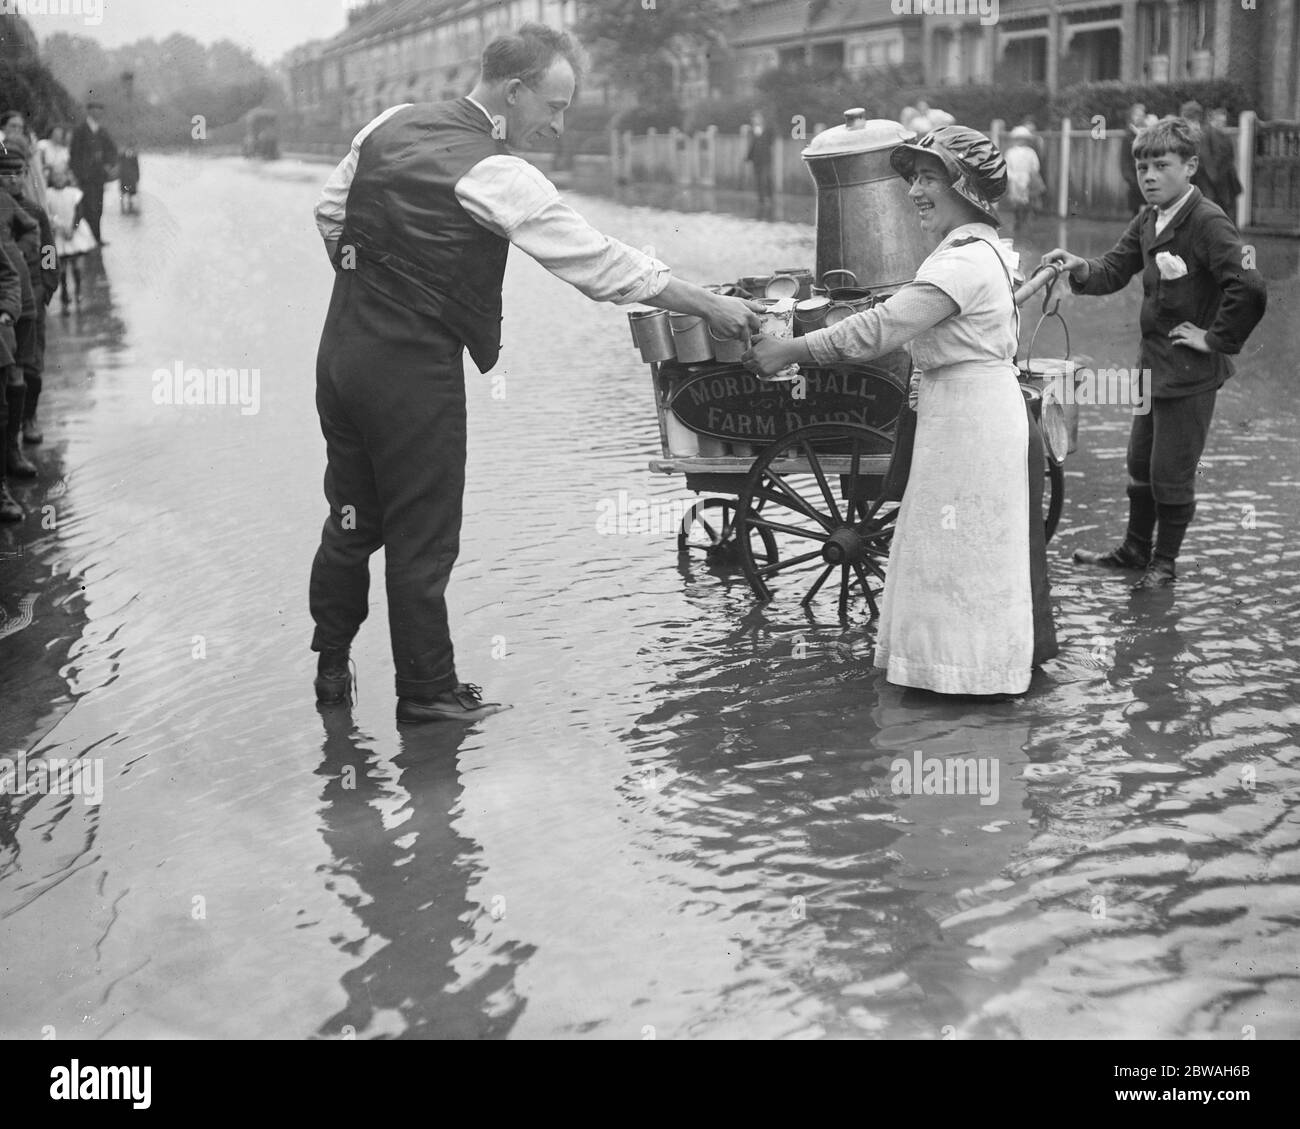 Die Überschwemmungen in Raynes Park Morden Hall Farm Dairy Versorgung eines Kunden 2 August 1917 Stockfoto